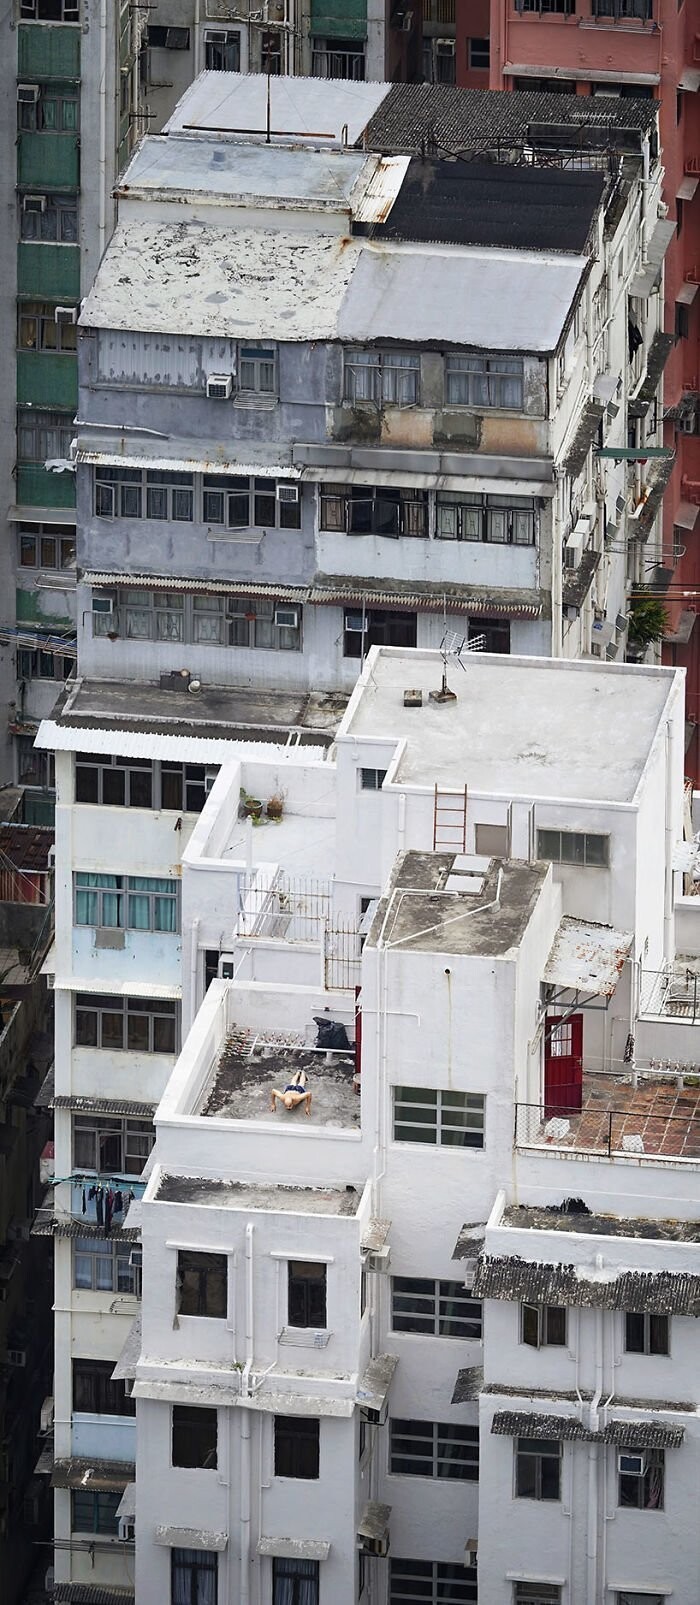 6. "Отжимания". Мужчина делает физические упражнения на крыше дома